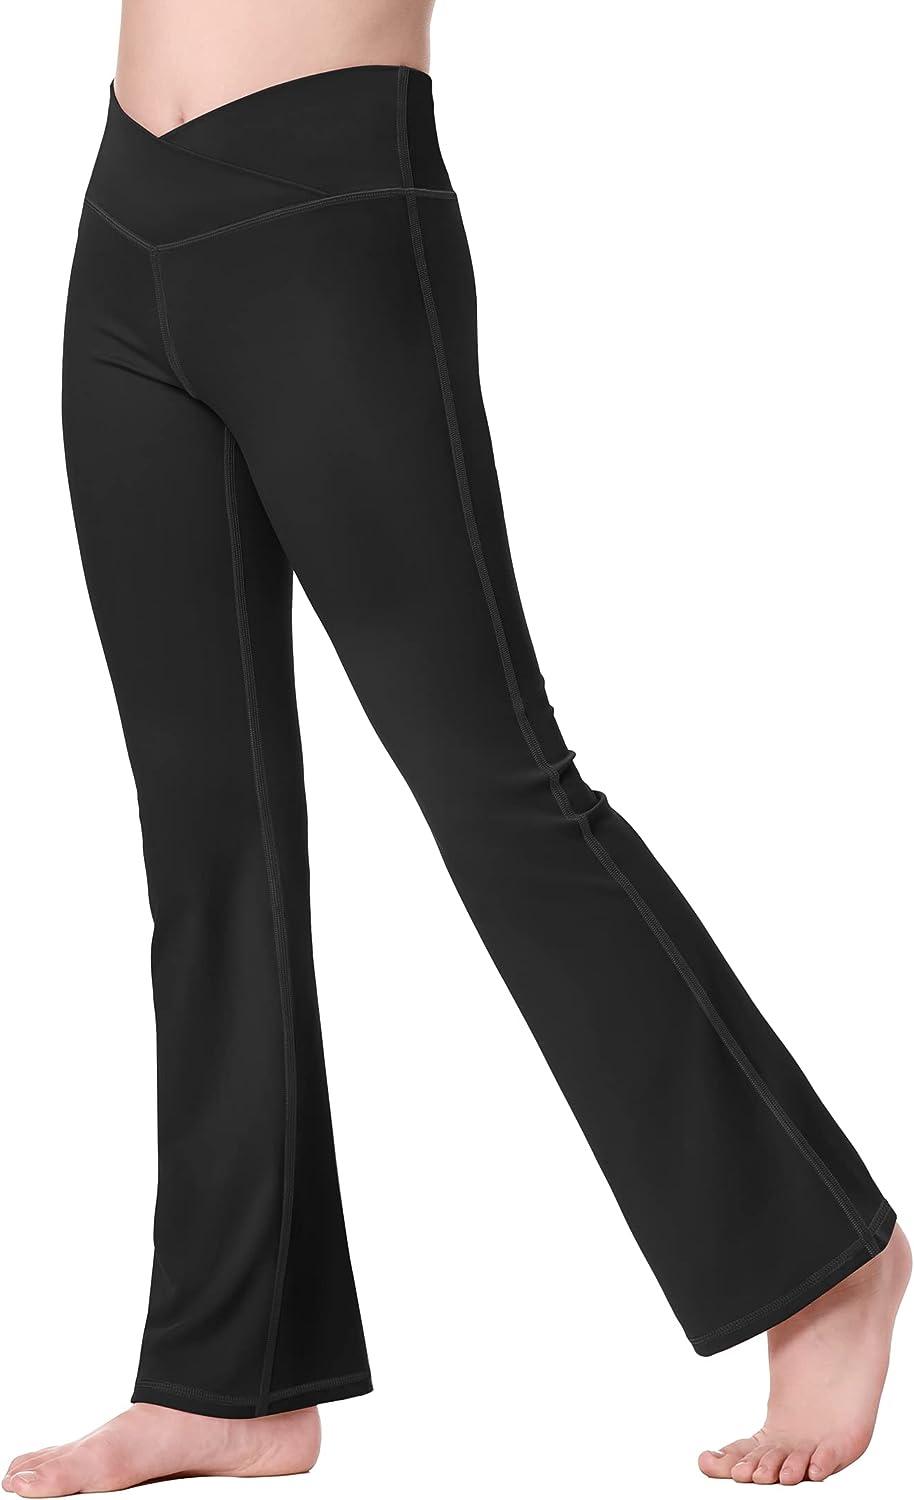 Gubotare Yoga Pants For Women With Pockets Black Flare Yoga Pants for  Women-Strechy Soft Bootcut Leggings for ,Black S 